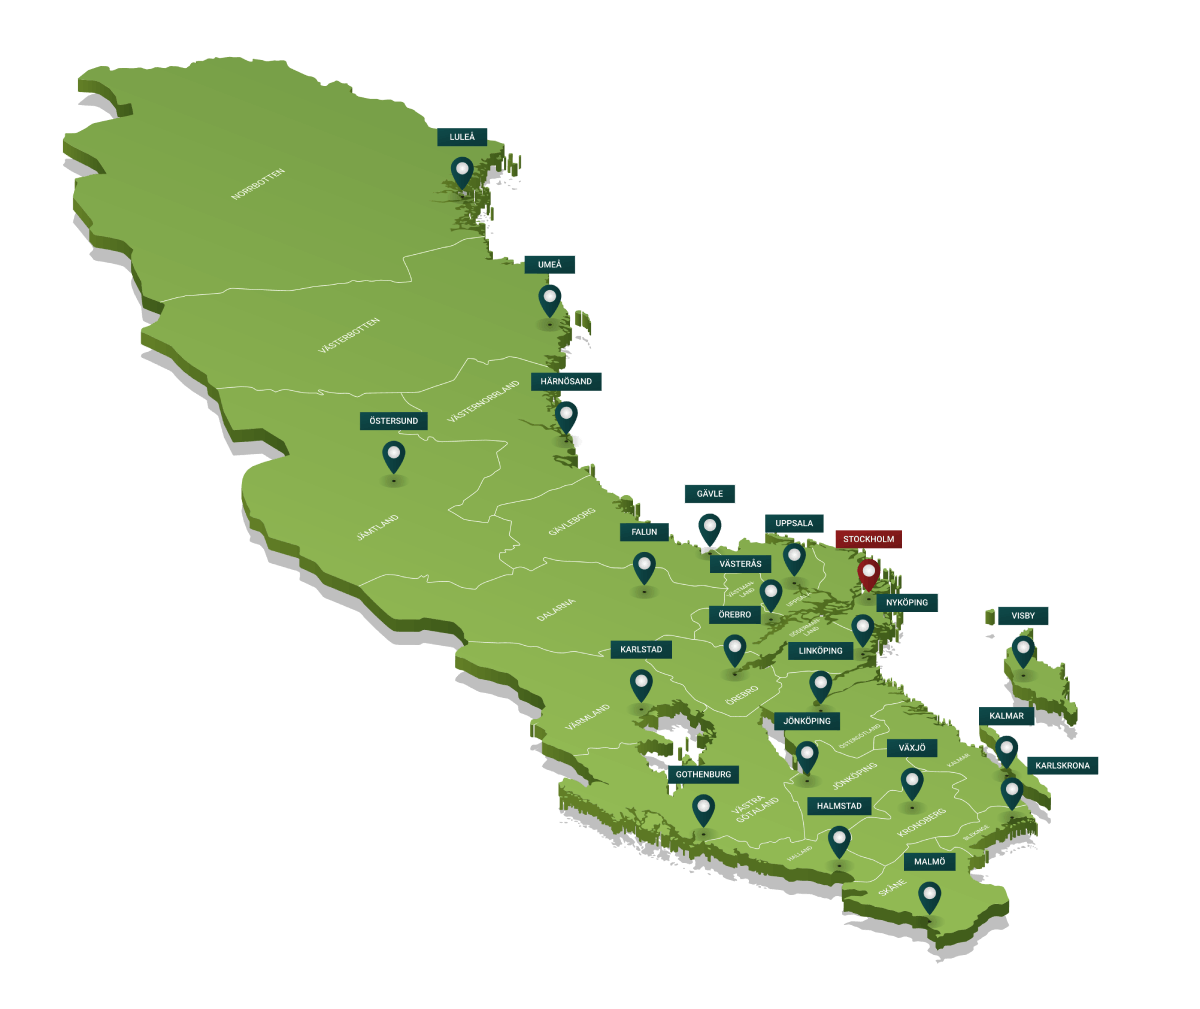 Kartanalys - karttjänst för e-handel - områdesindelning och leveranszoner baserat på postnummer